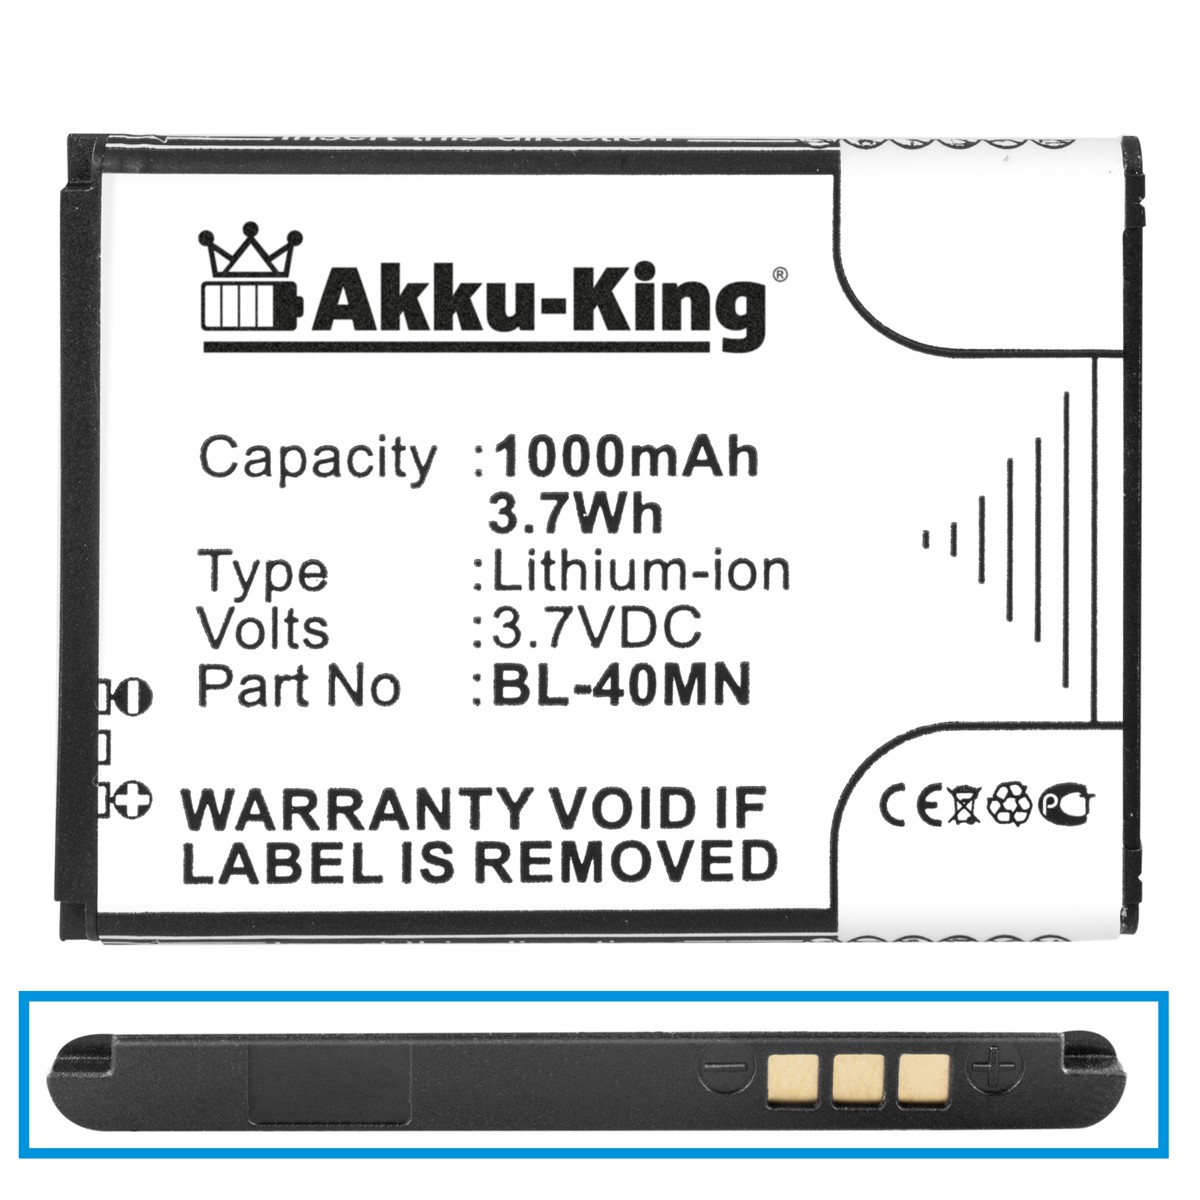 kompatibel LG 3.7 Handy-Akku, Li-Ion mit Volt, Akku AKKU-KING BL-40MN 1000mAh